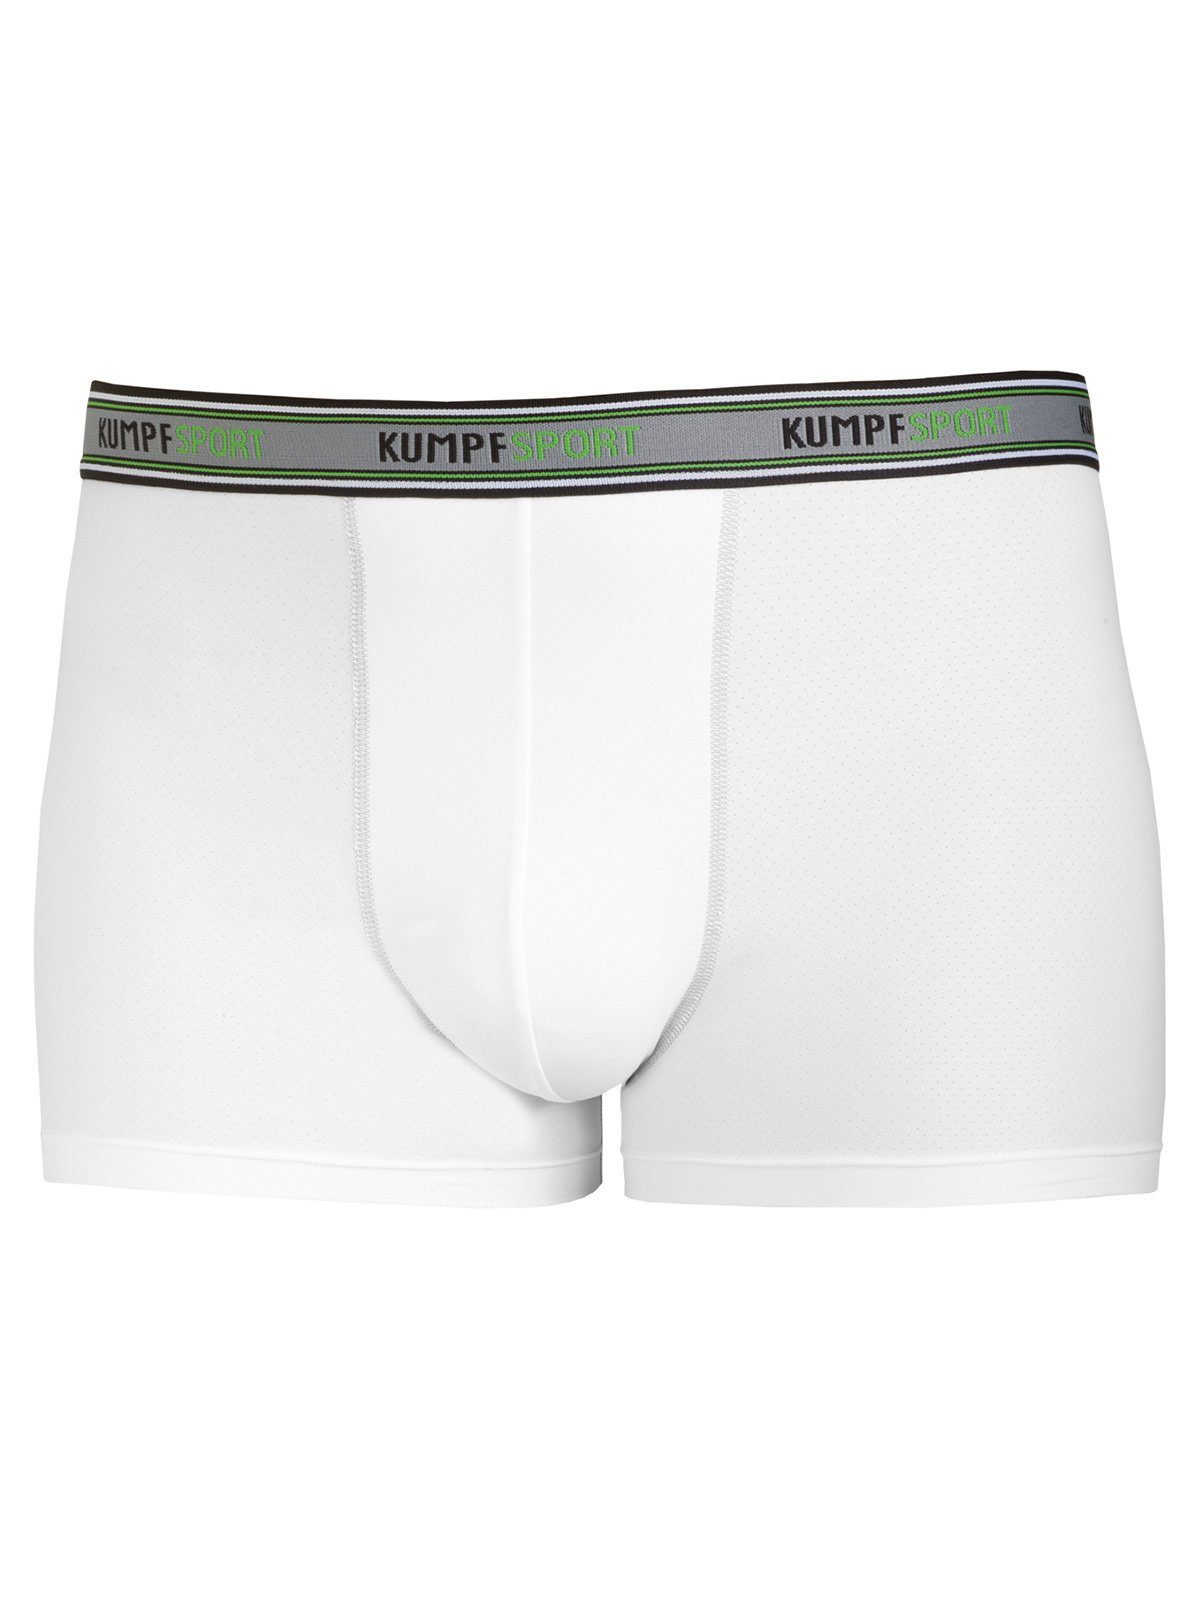 KUMPF Retro Pants Herren Sportwäsche Tactel Pants weiss Materialmix Gummibund 1-St) (Stück